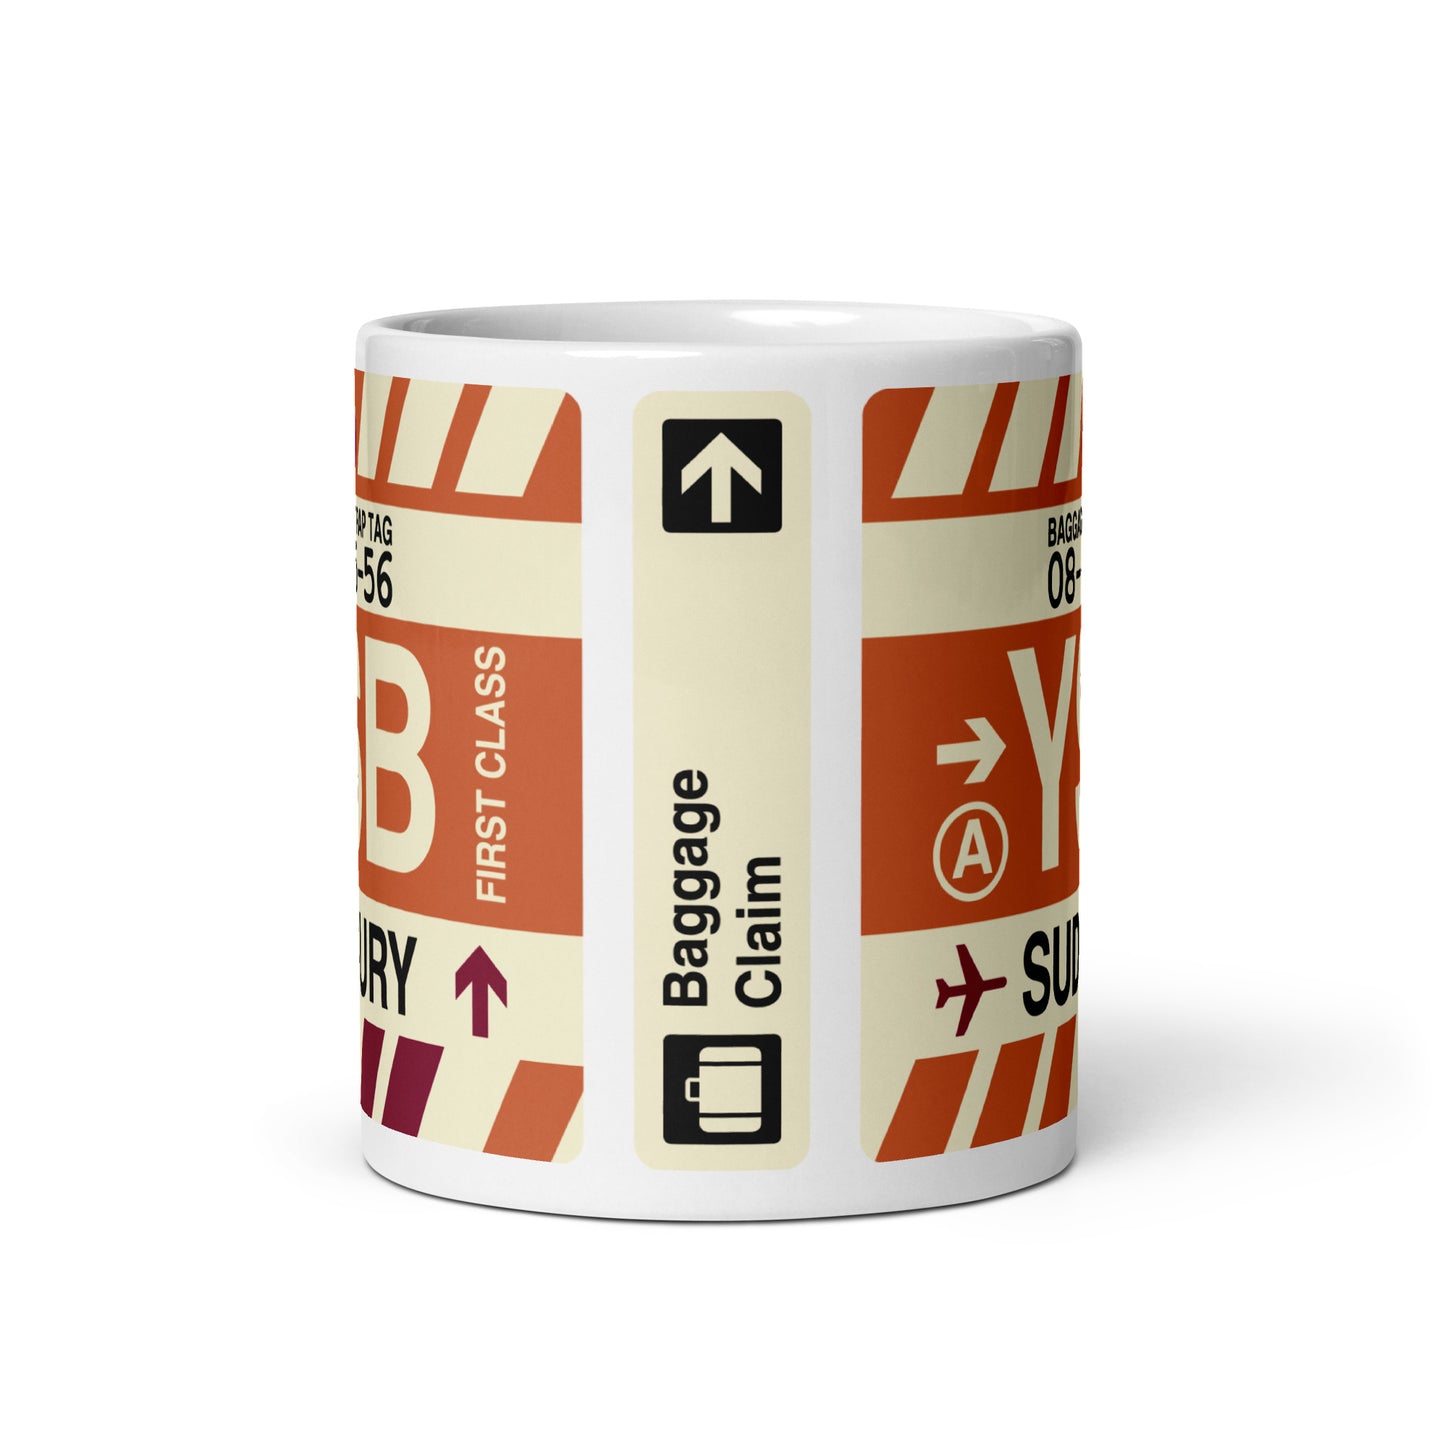 Travel-Themed Coffee Mug • YSB Sudbury • YHM Designs - Image 02